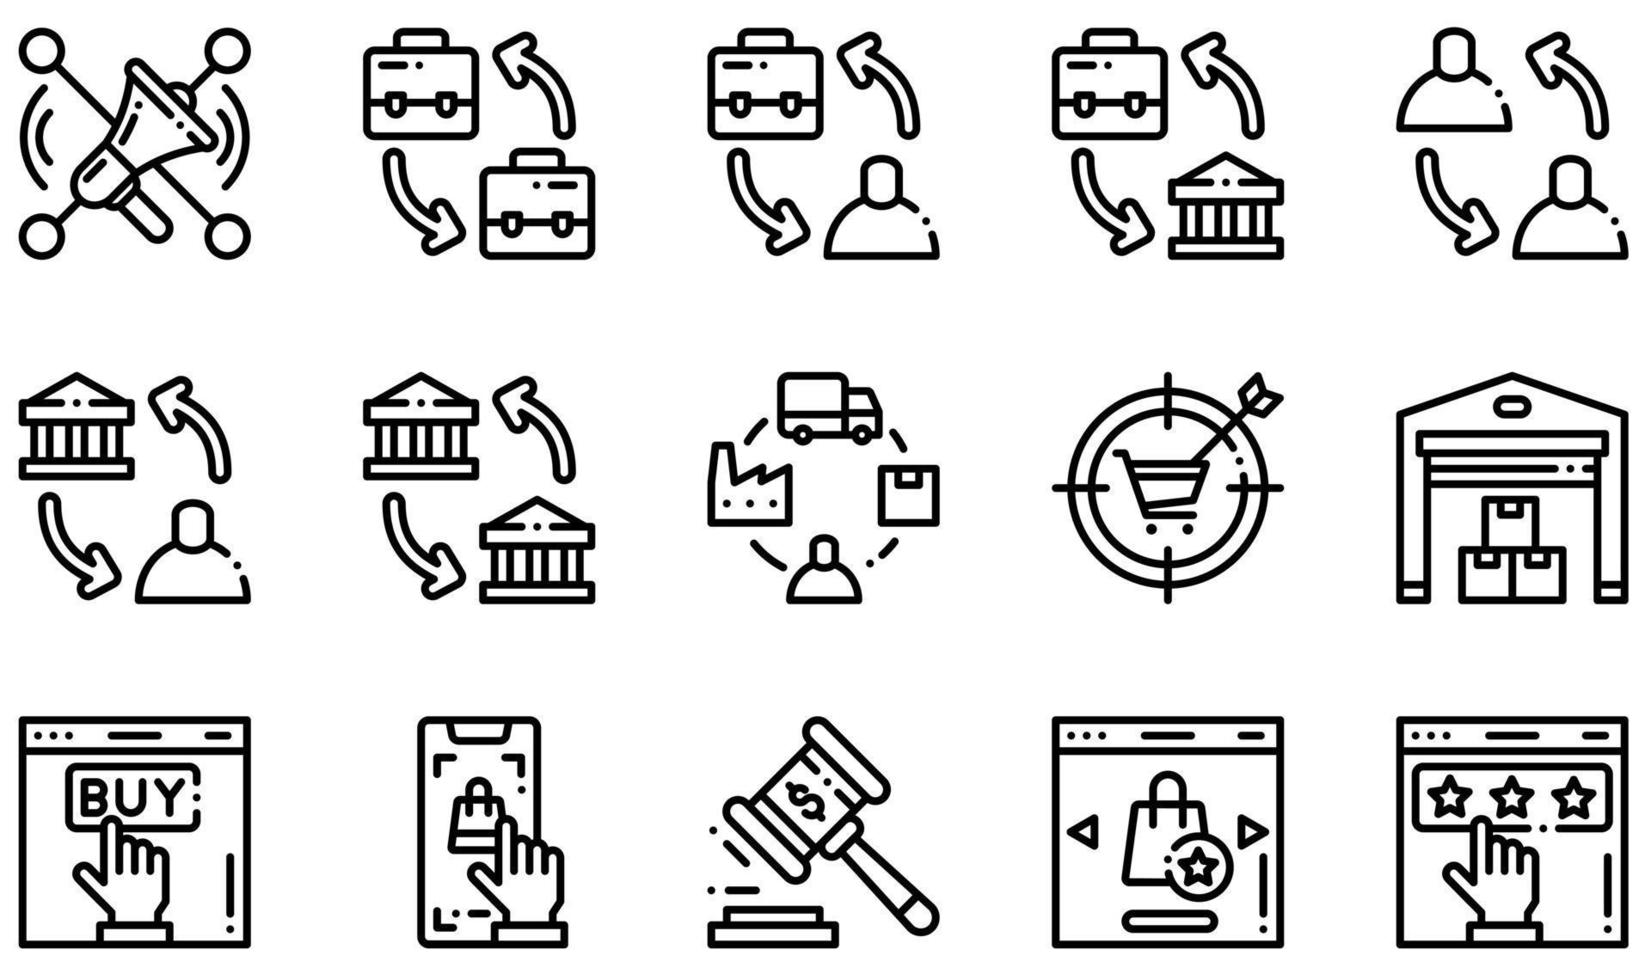 conjunto de ícones vetoriais relacionados ao comércio eletrônico. contém ícones como socialmarketing, b2b, b2c, cadeia de suprimentos, armazém, qualidade e muito mais. vetor